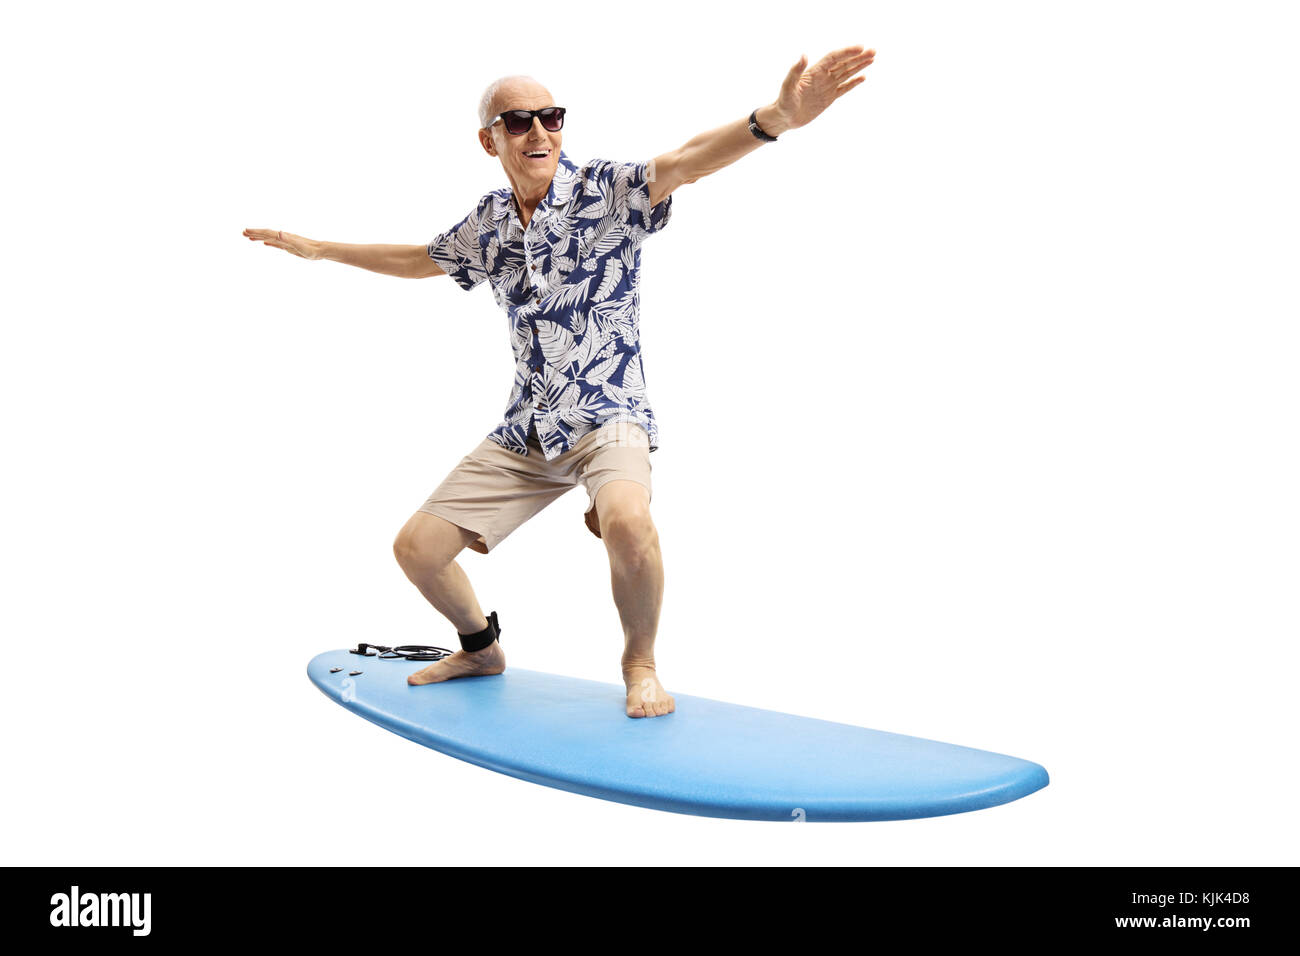 Joyful elderly man surfing isolated on white background Stock Photo